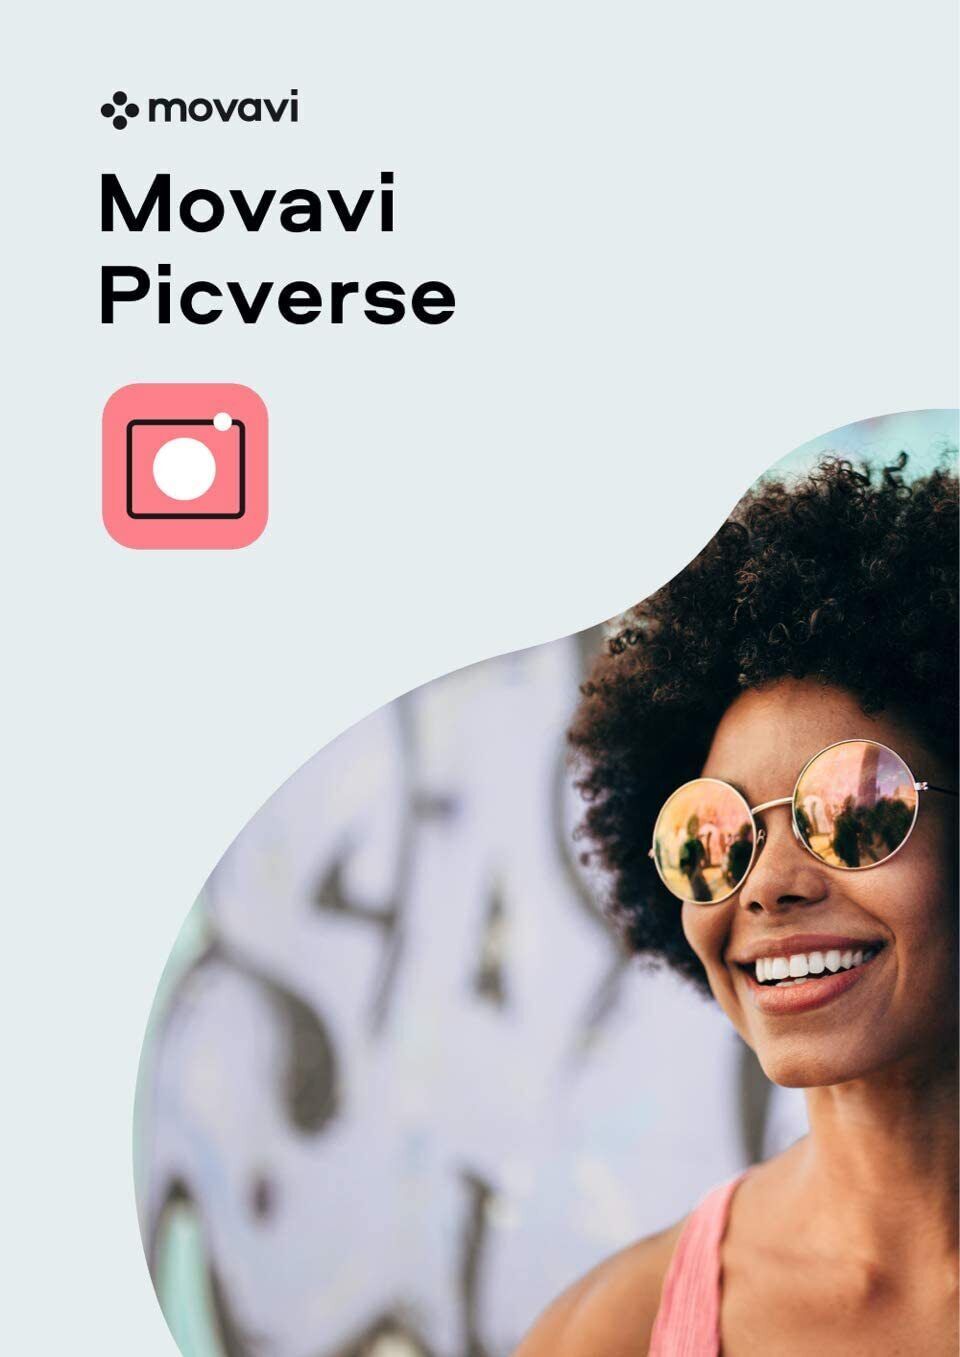 Movavi Picverse AI based picture editor